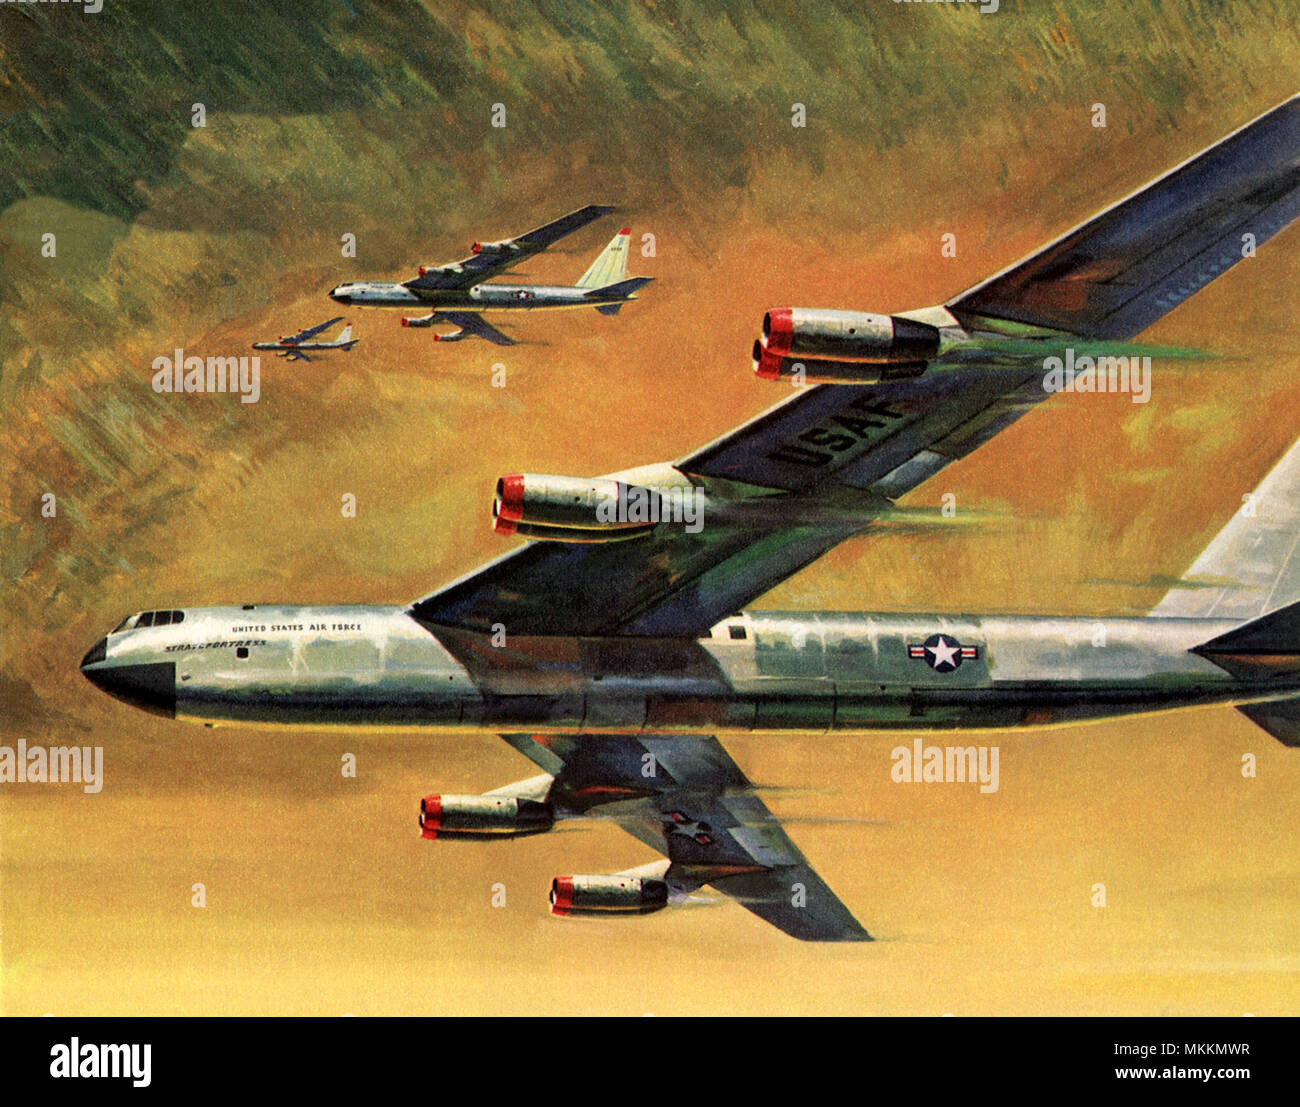 B-52 Bombers fly through yellow skies Stock Photo